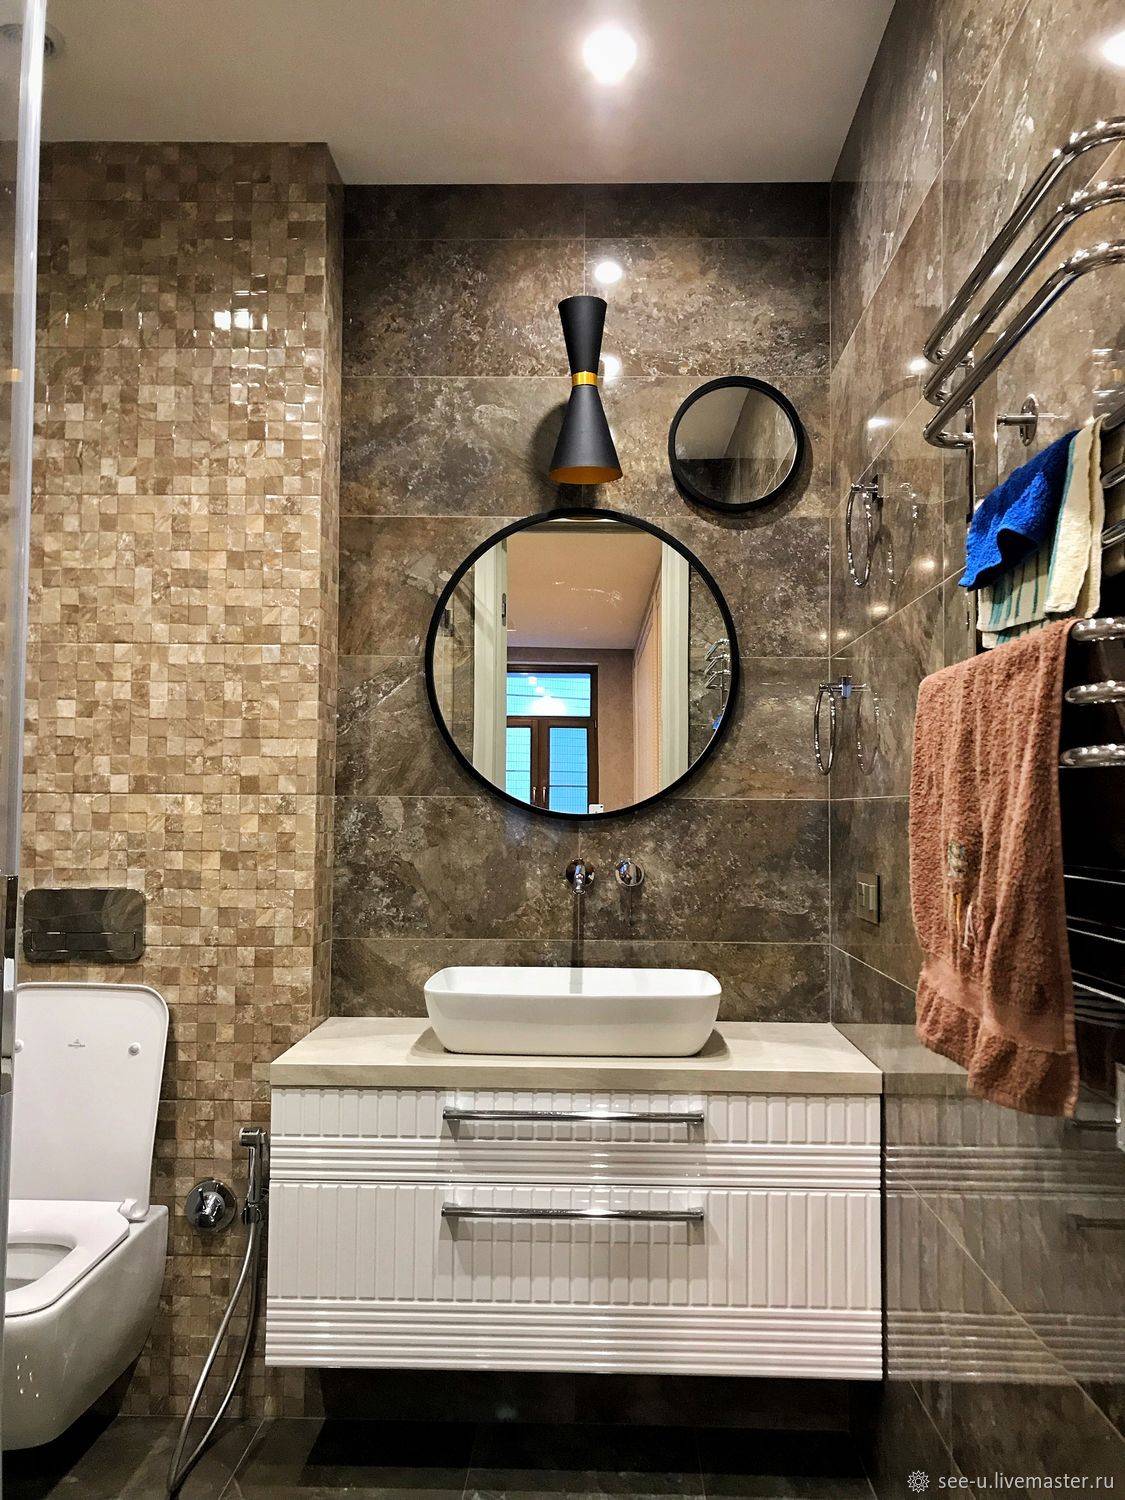 Зеркала в гостиной - топ-160 фото и видео идей оформления гостиной зеркалами. правила использования зеркал. декоративное освещение зеркал в гостиной